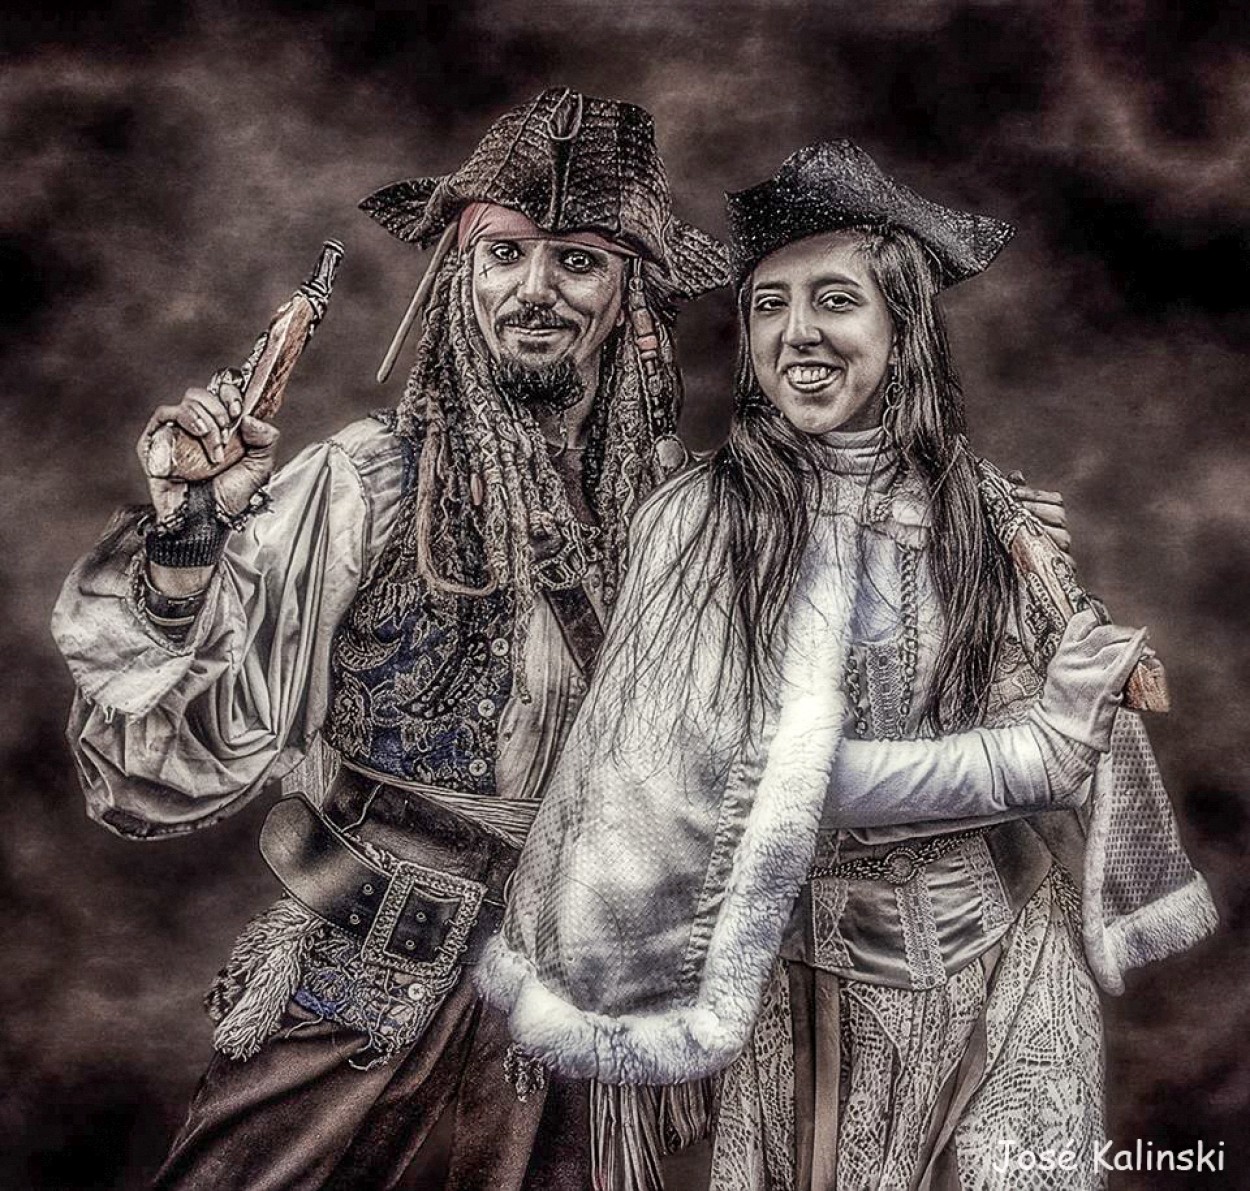 "Los piratas de San Telmo" de Jose Carlos Kalinski